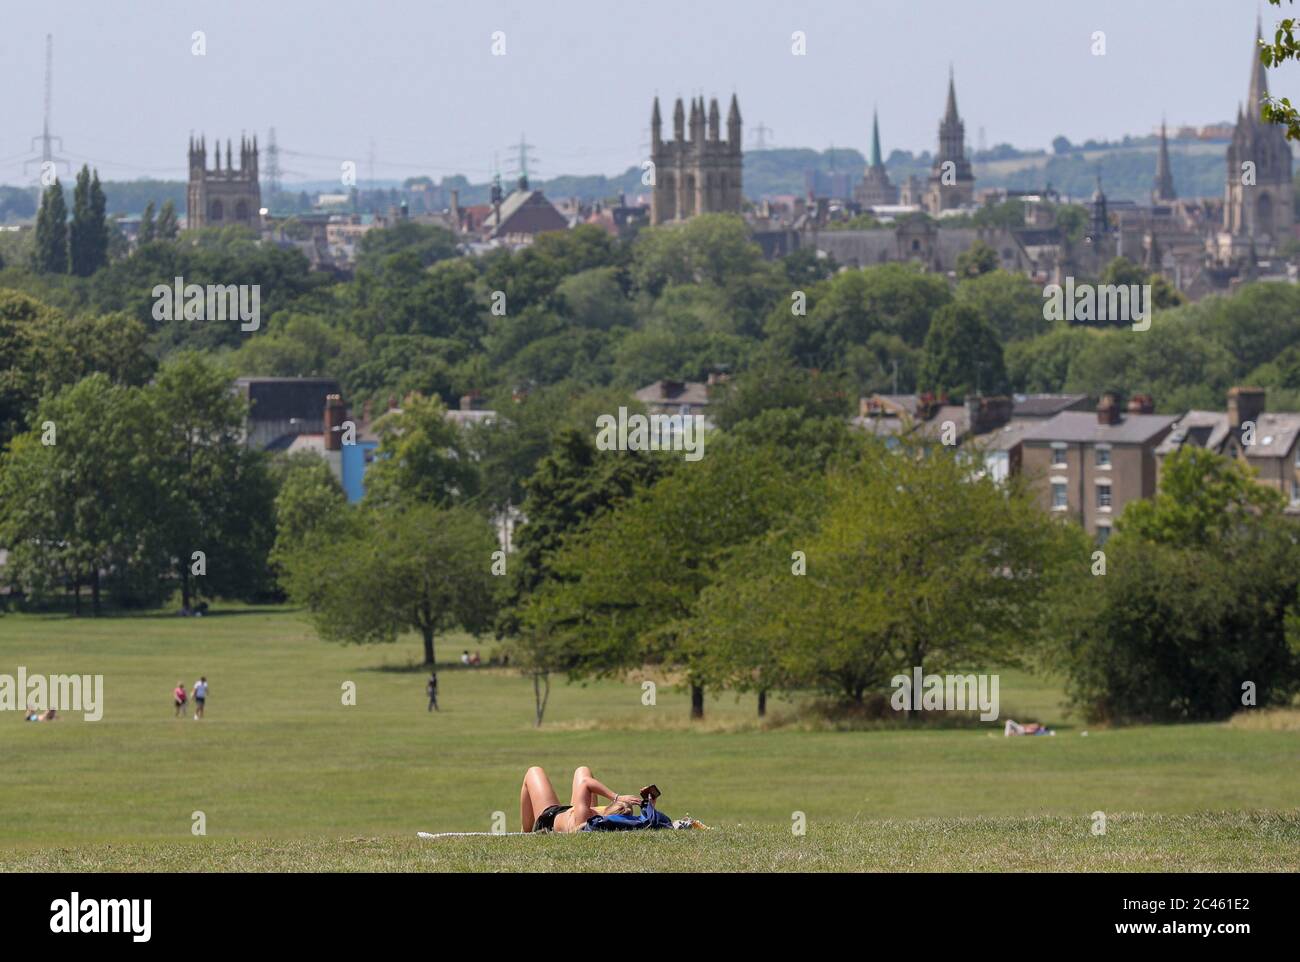 Ein Sonnenanbeter genießt die Sonne in Oxford, da Großbritannien für eine Juni-Hitzewelle vorbereitet ist, da die Temperaturen in dieser Woche bis in die Mitte der 30er Jahre steigen werden. Stockfoto